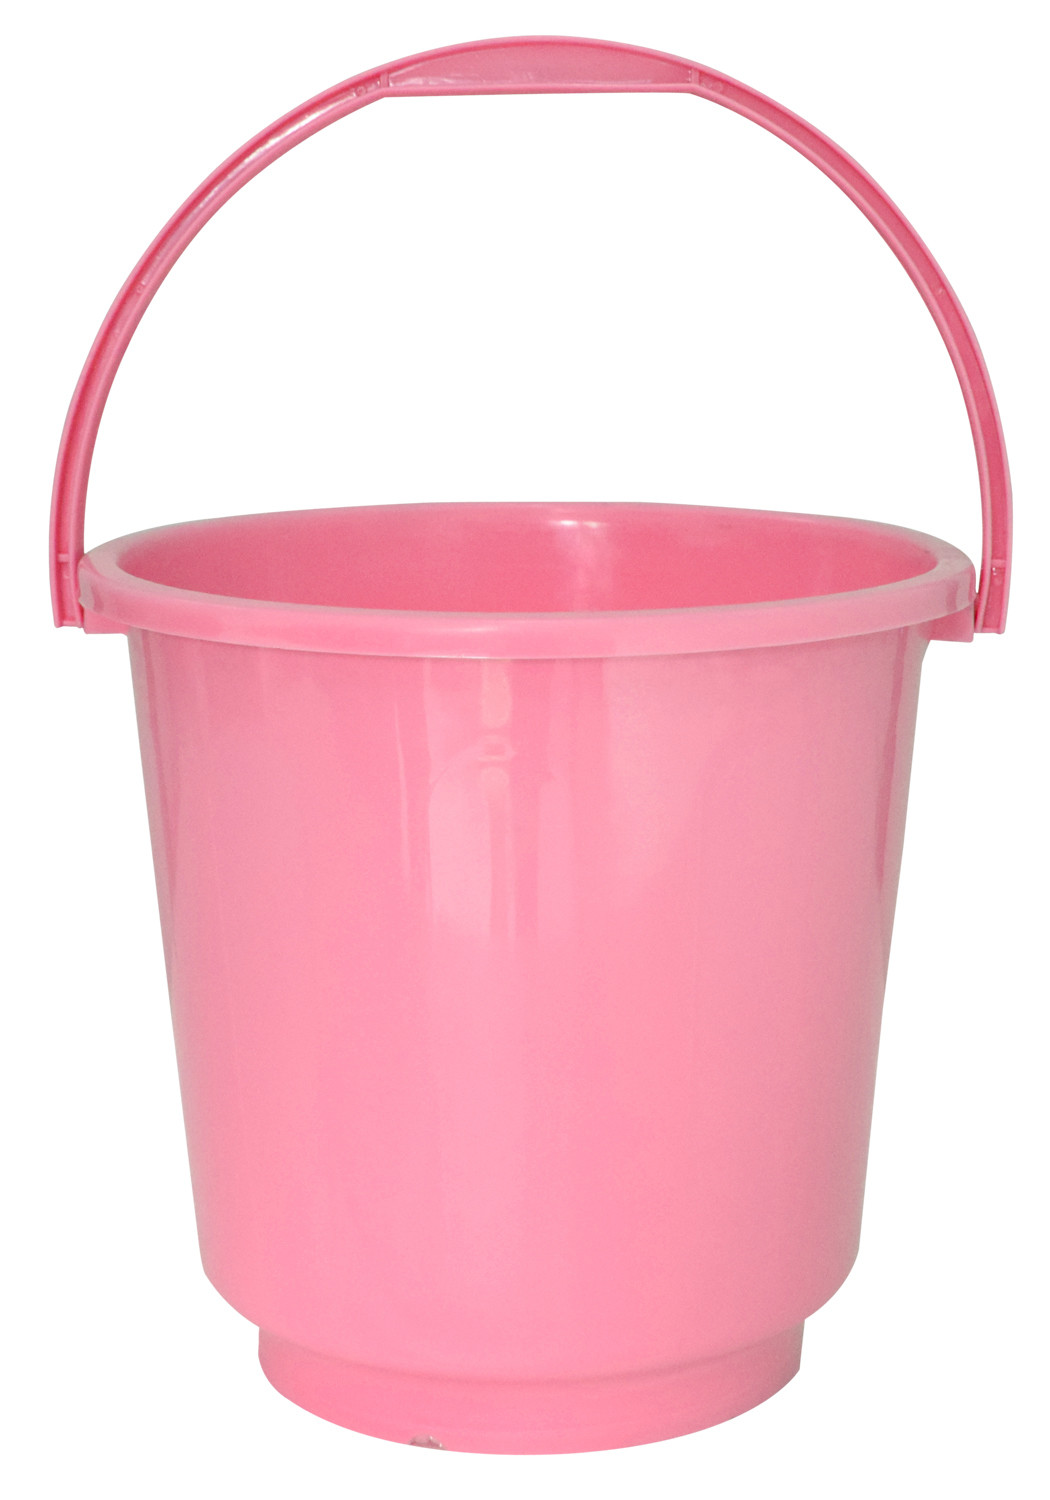 Kuber Industries 3 Pieces Unbreakable Virgin Plastic Multipurpose Bucket, Dustbin & Stool Set (Pink)